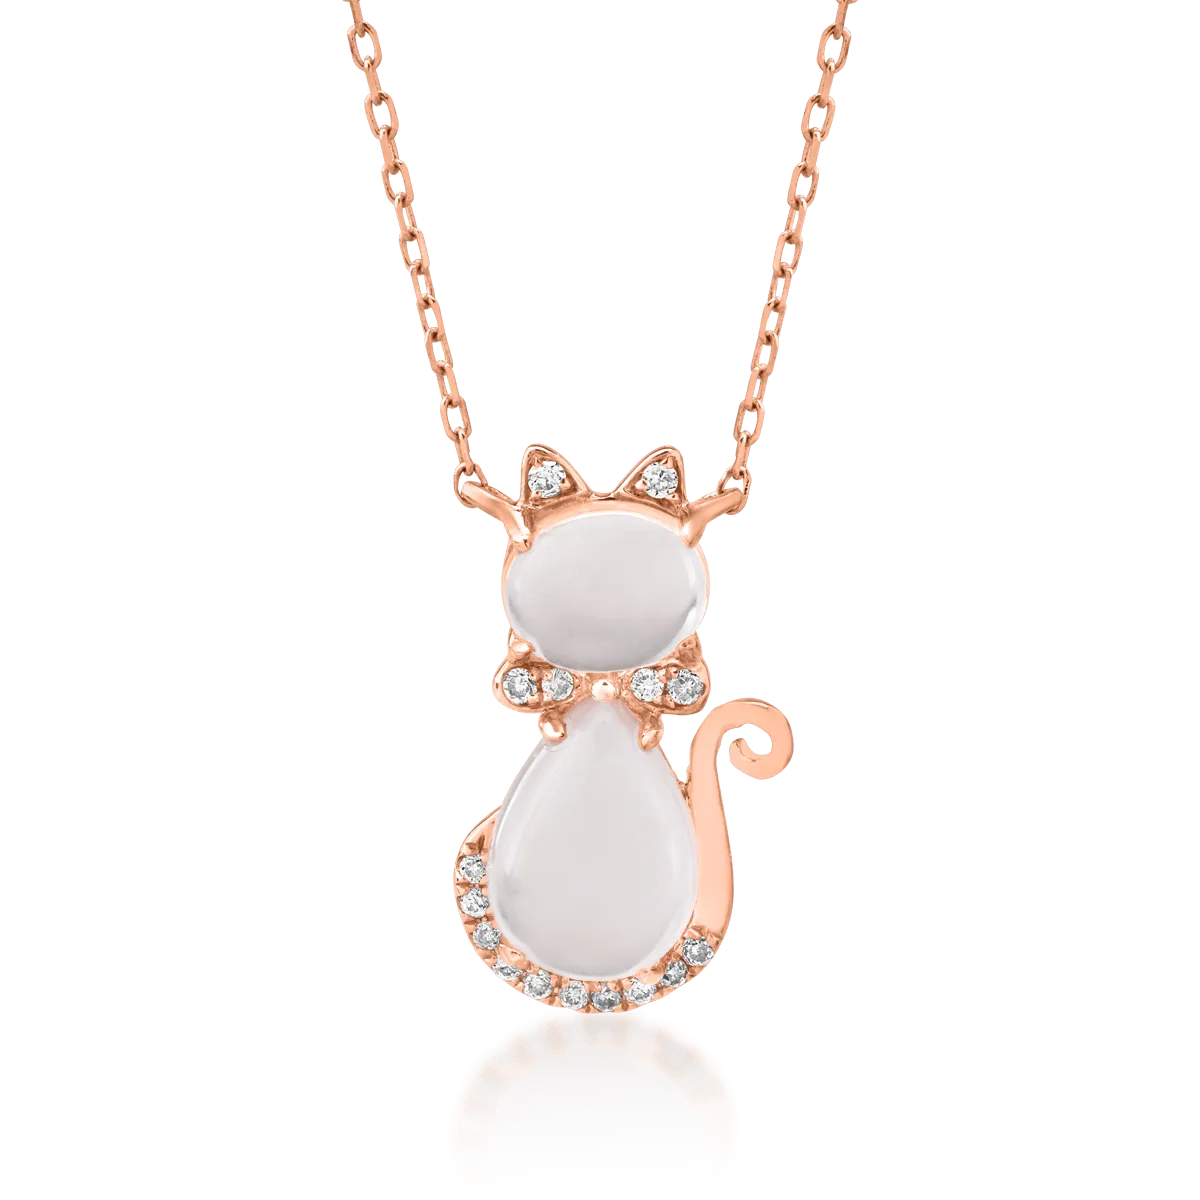 Rose gold cat children's pendant necklace with 1.3ct rose quartz and 0.03ct diamonds